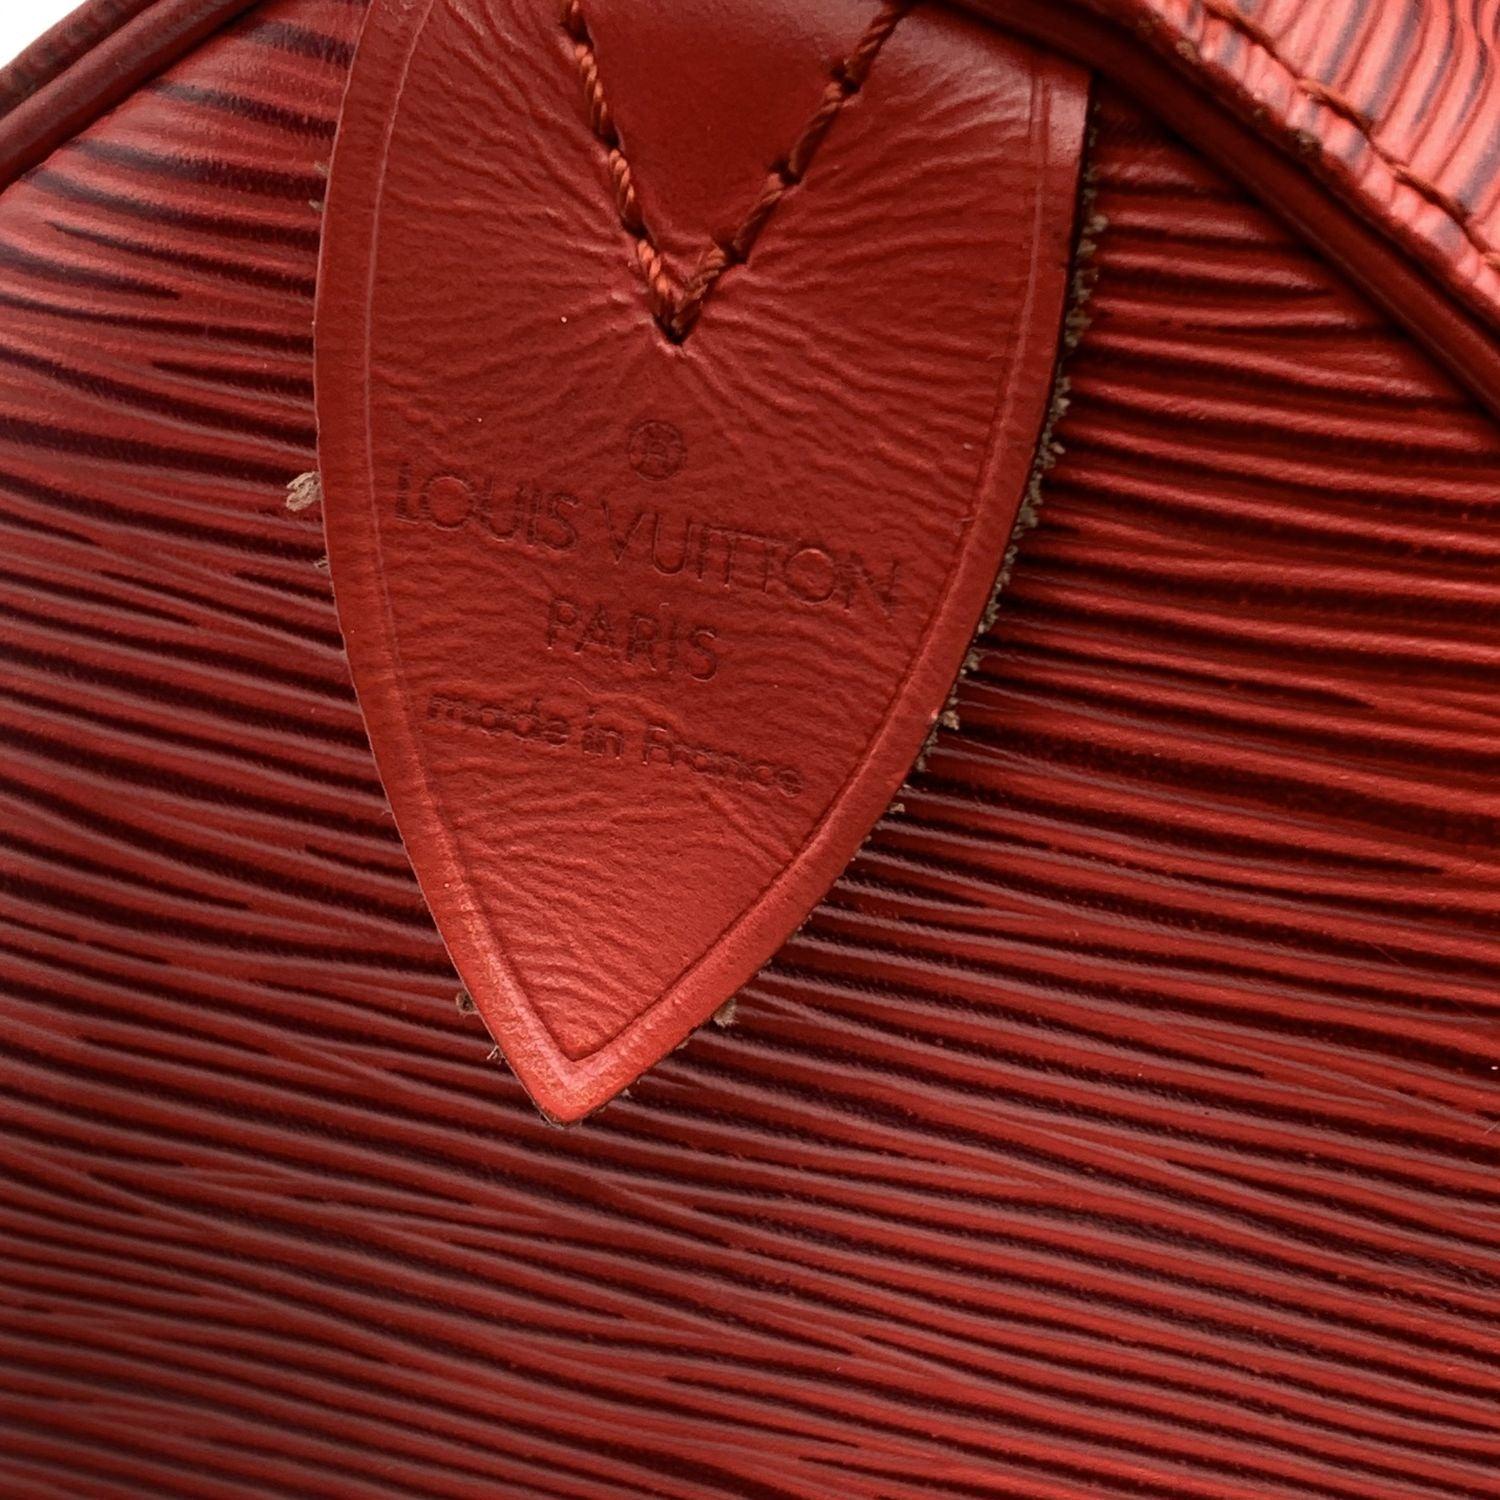 Women's Louis Vuitton Vintage Red Epi Leather Speedy 35 Boston Bag Handbag